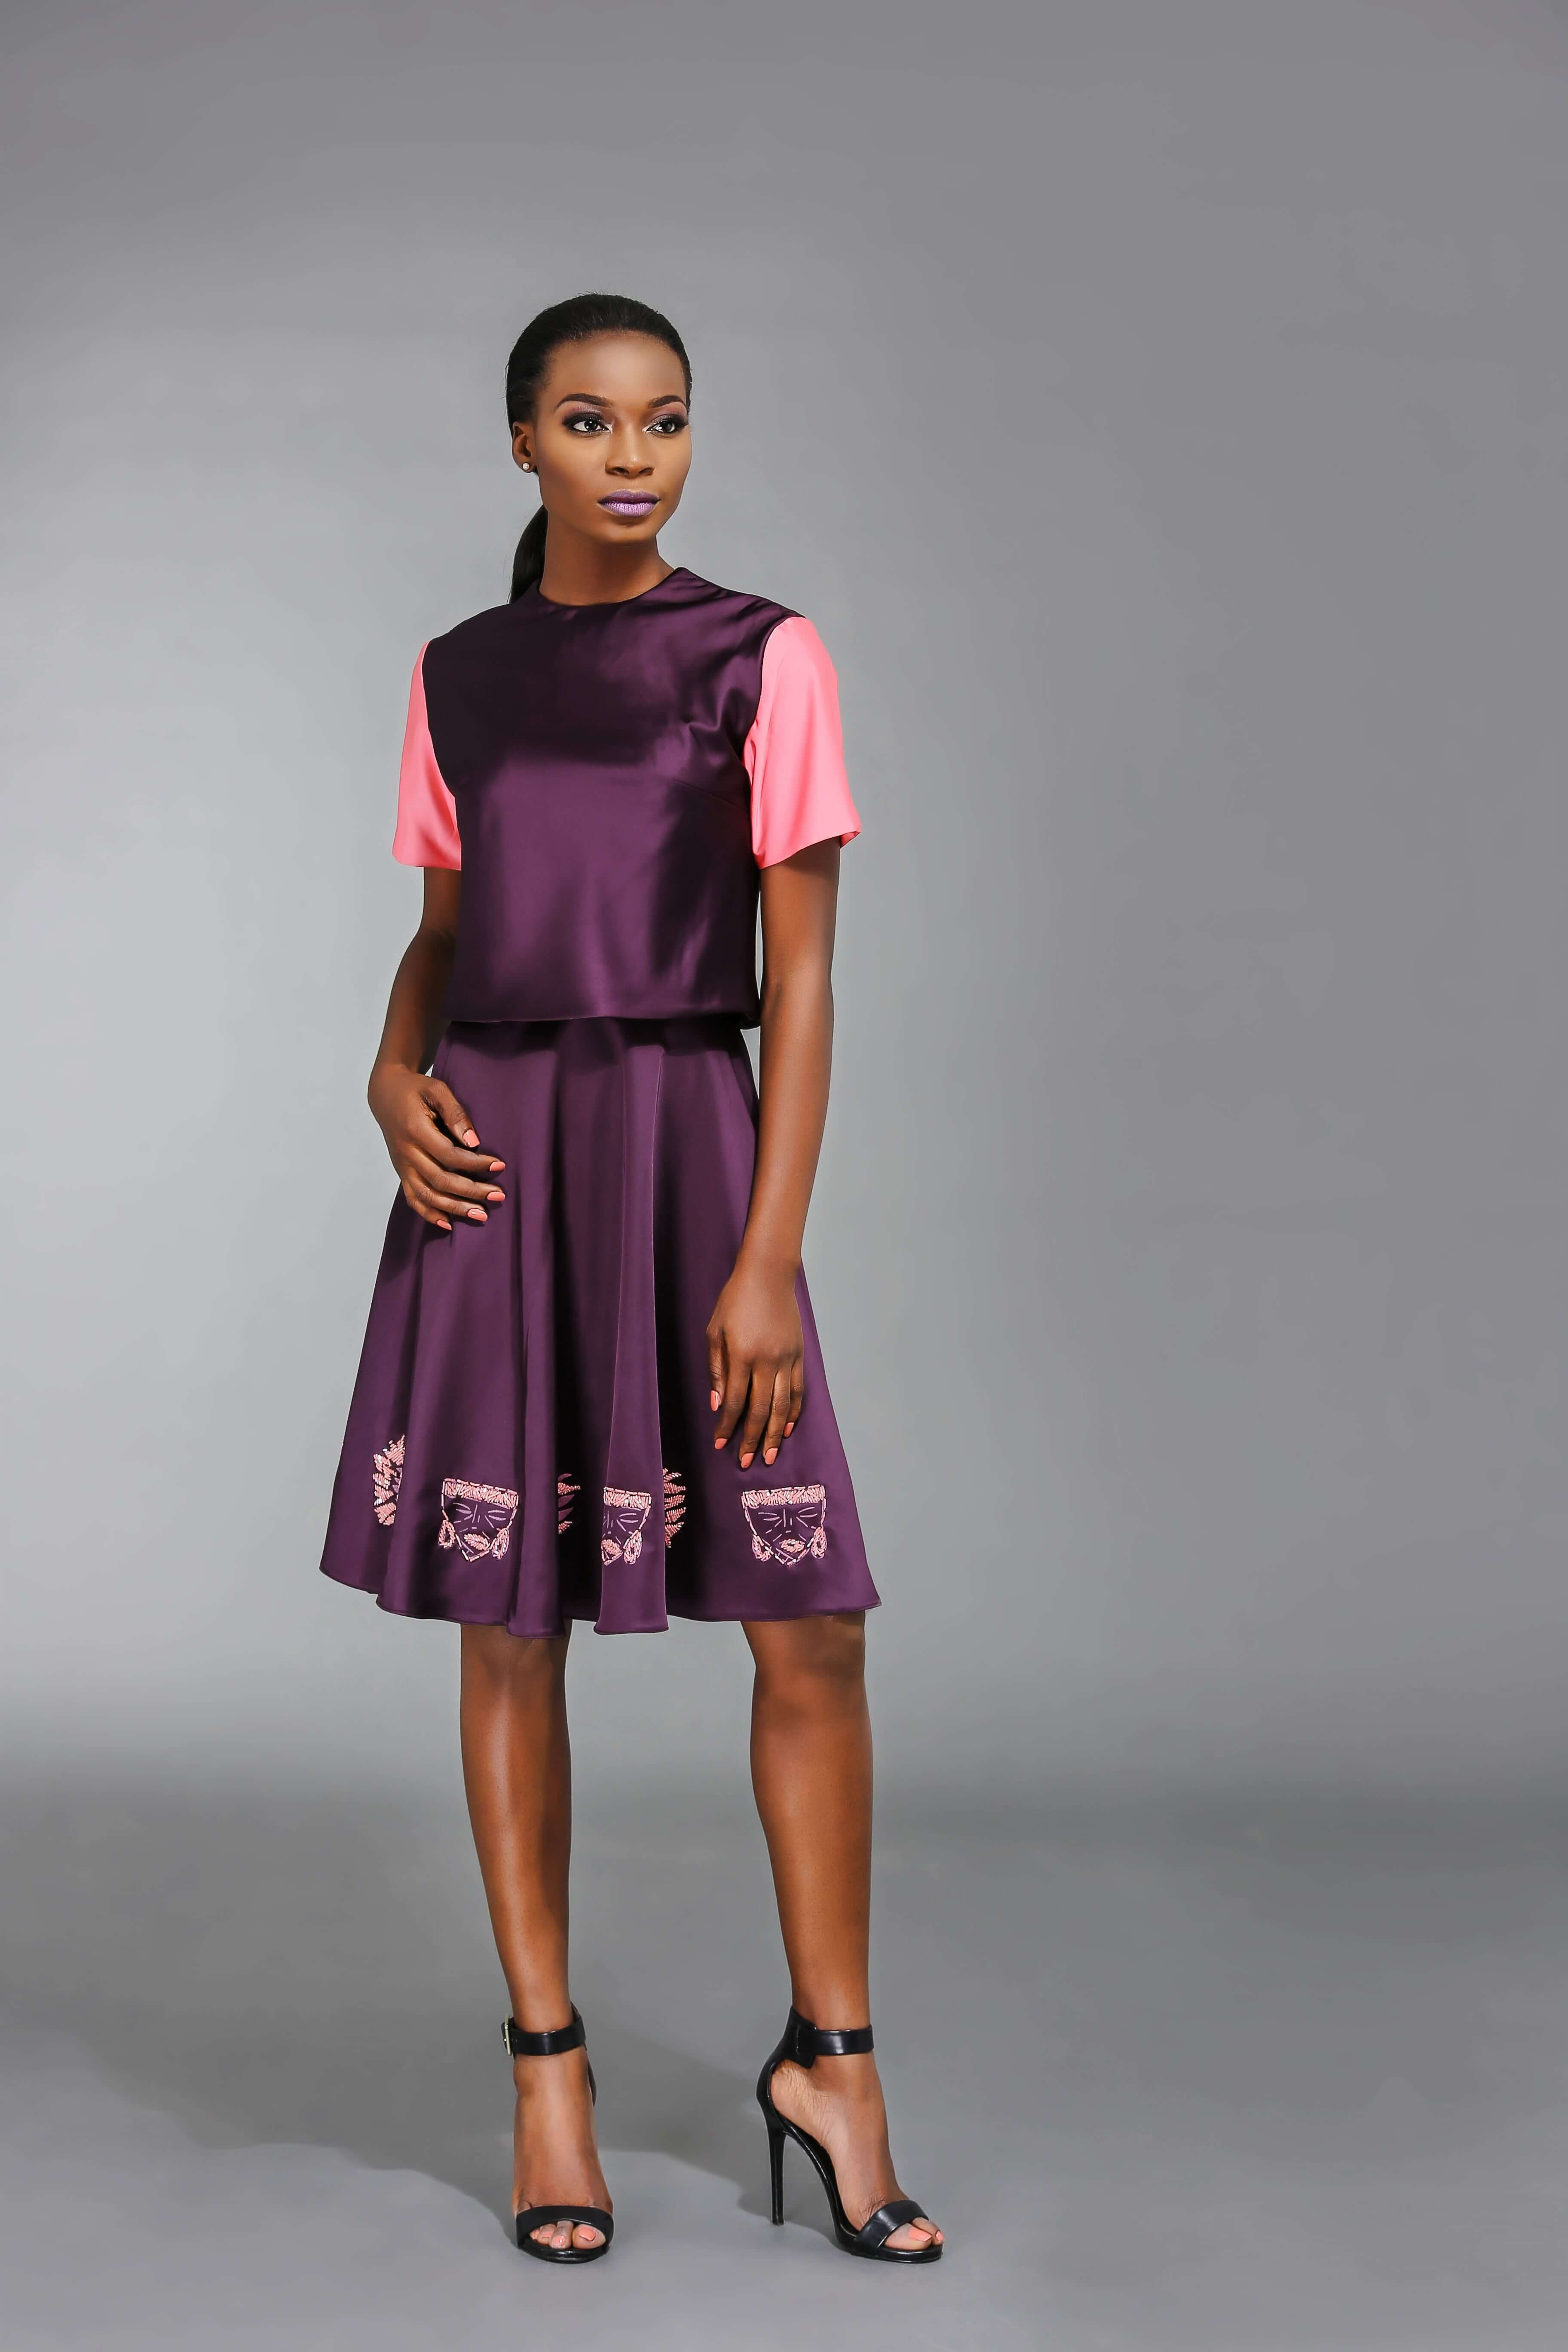 robe africaine moonlook SS15a5-min